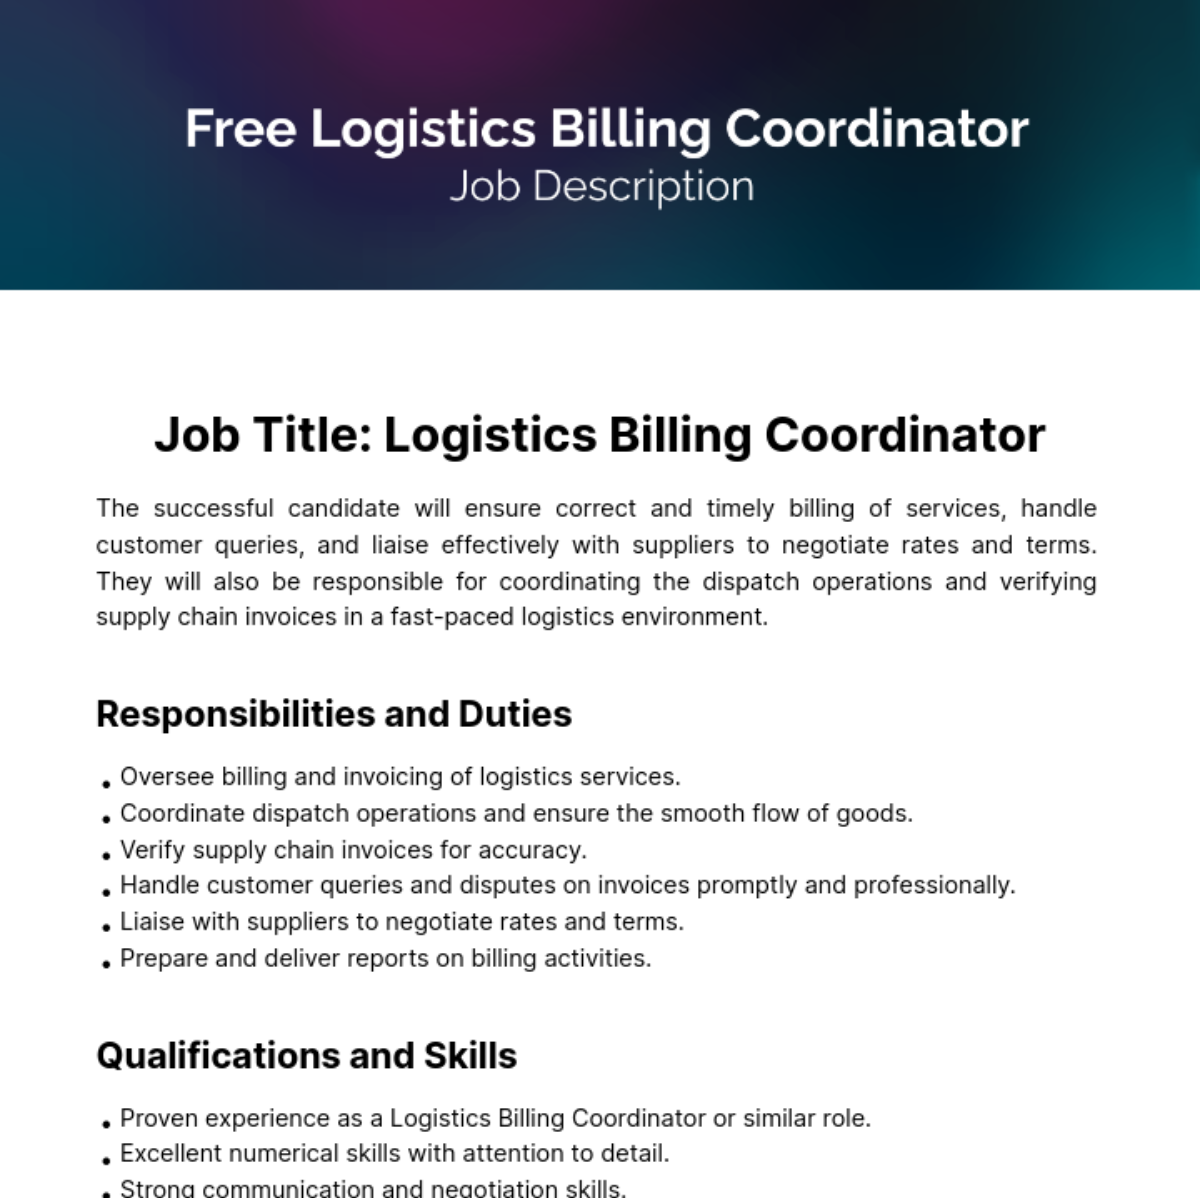 Free Logistics Billing Coordinator Job Description Template